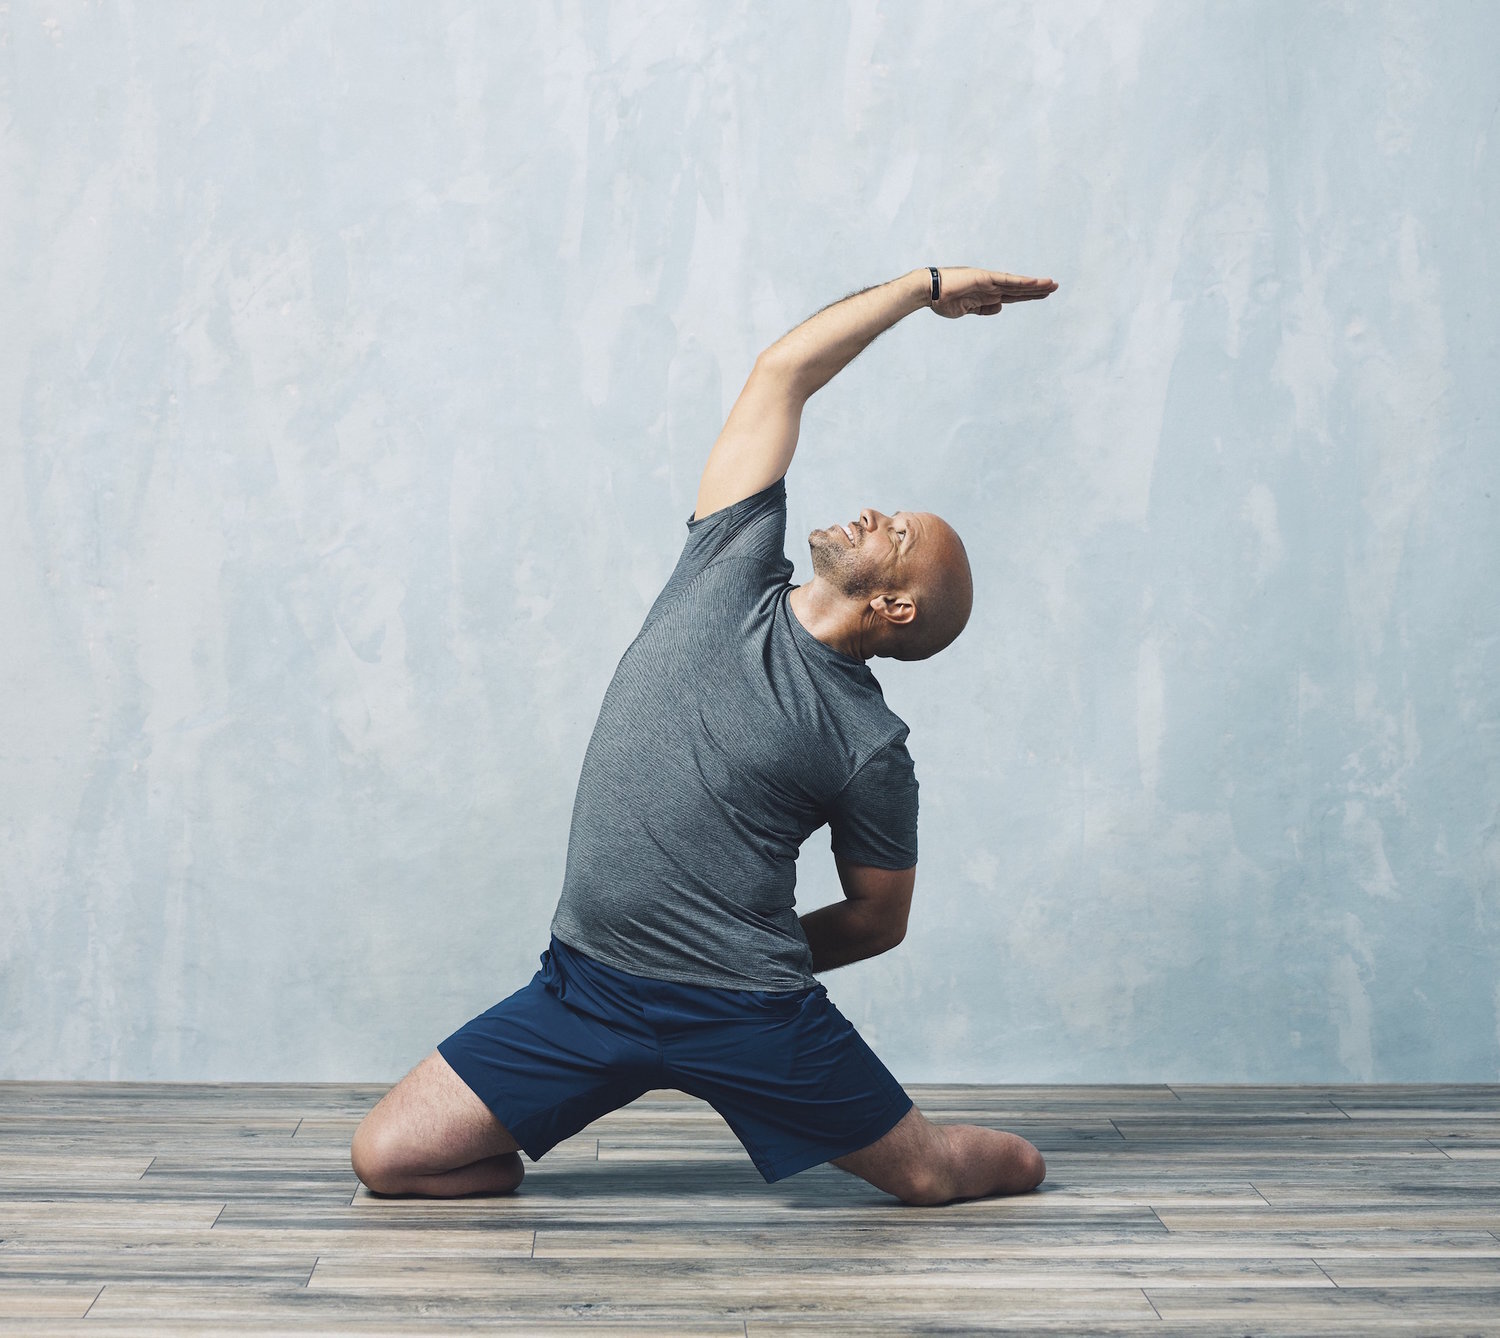 Namaste Yoga 300: The Journey of Awakening